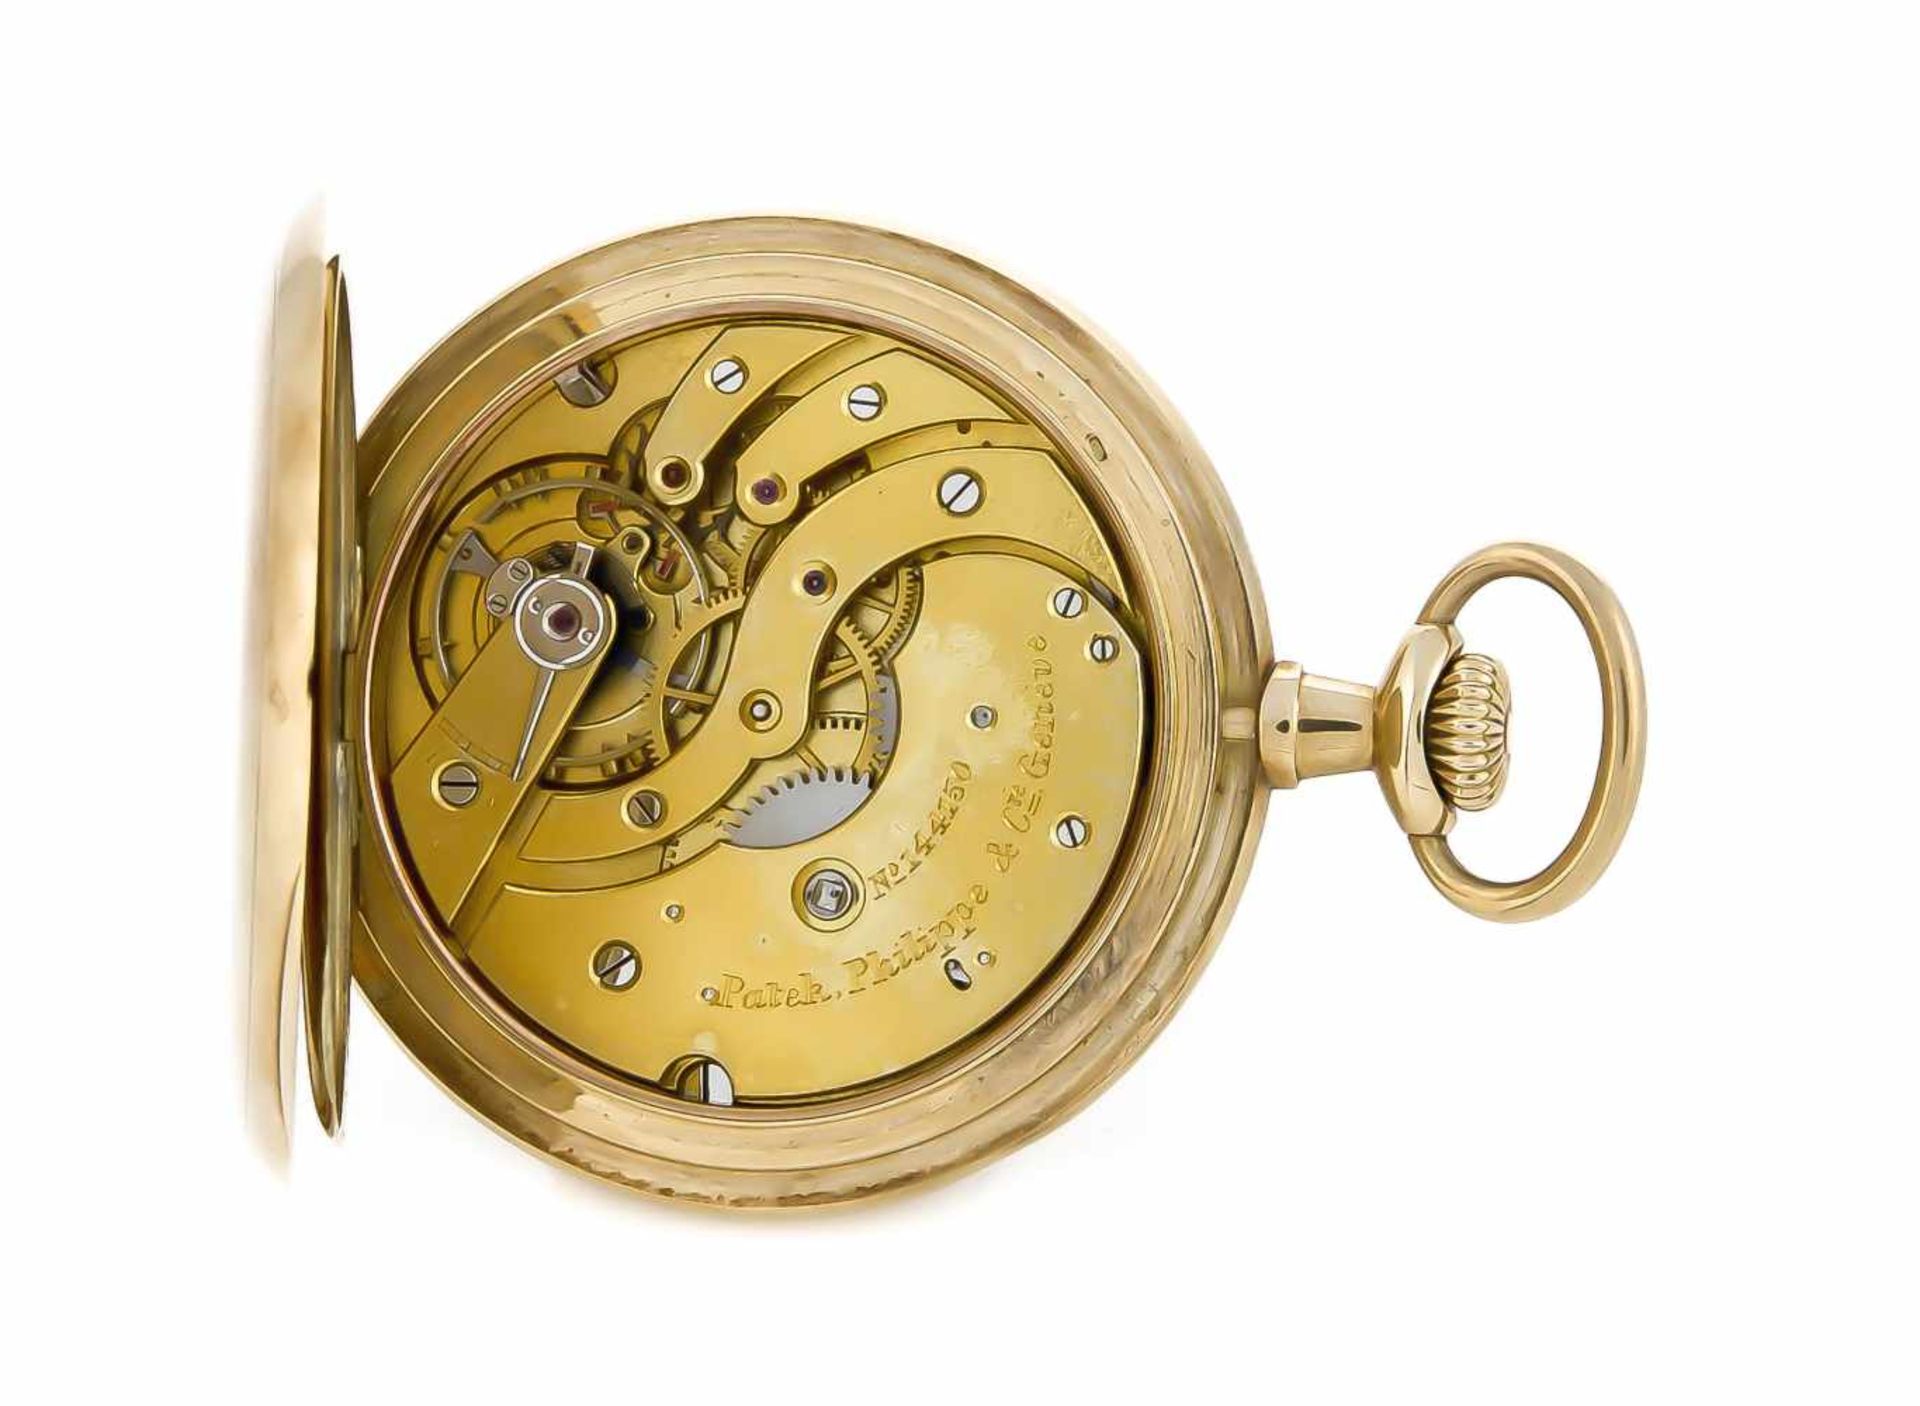 Sprungdeckel, Herrentaschenuhr Patek Philippe Geneve, 585 Gold, 3 Deckel, um 1900, Uhrwerksehr gut - Bild 2 aus 4